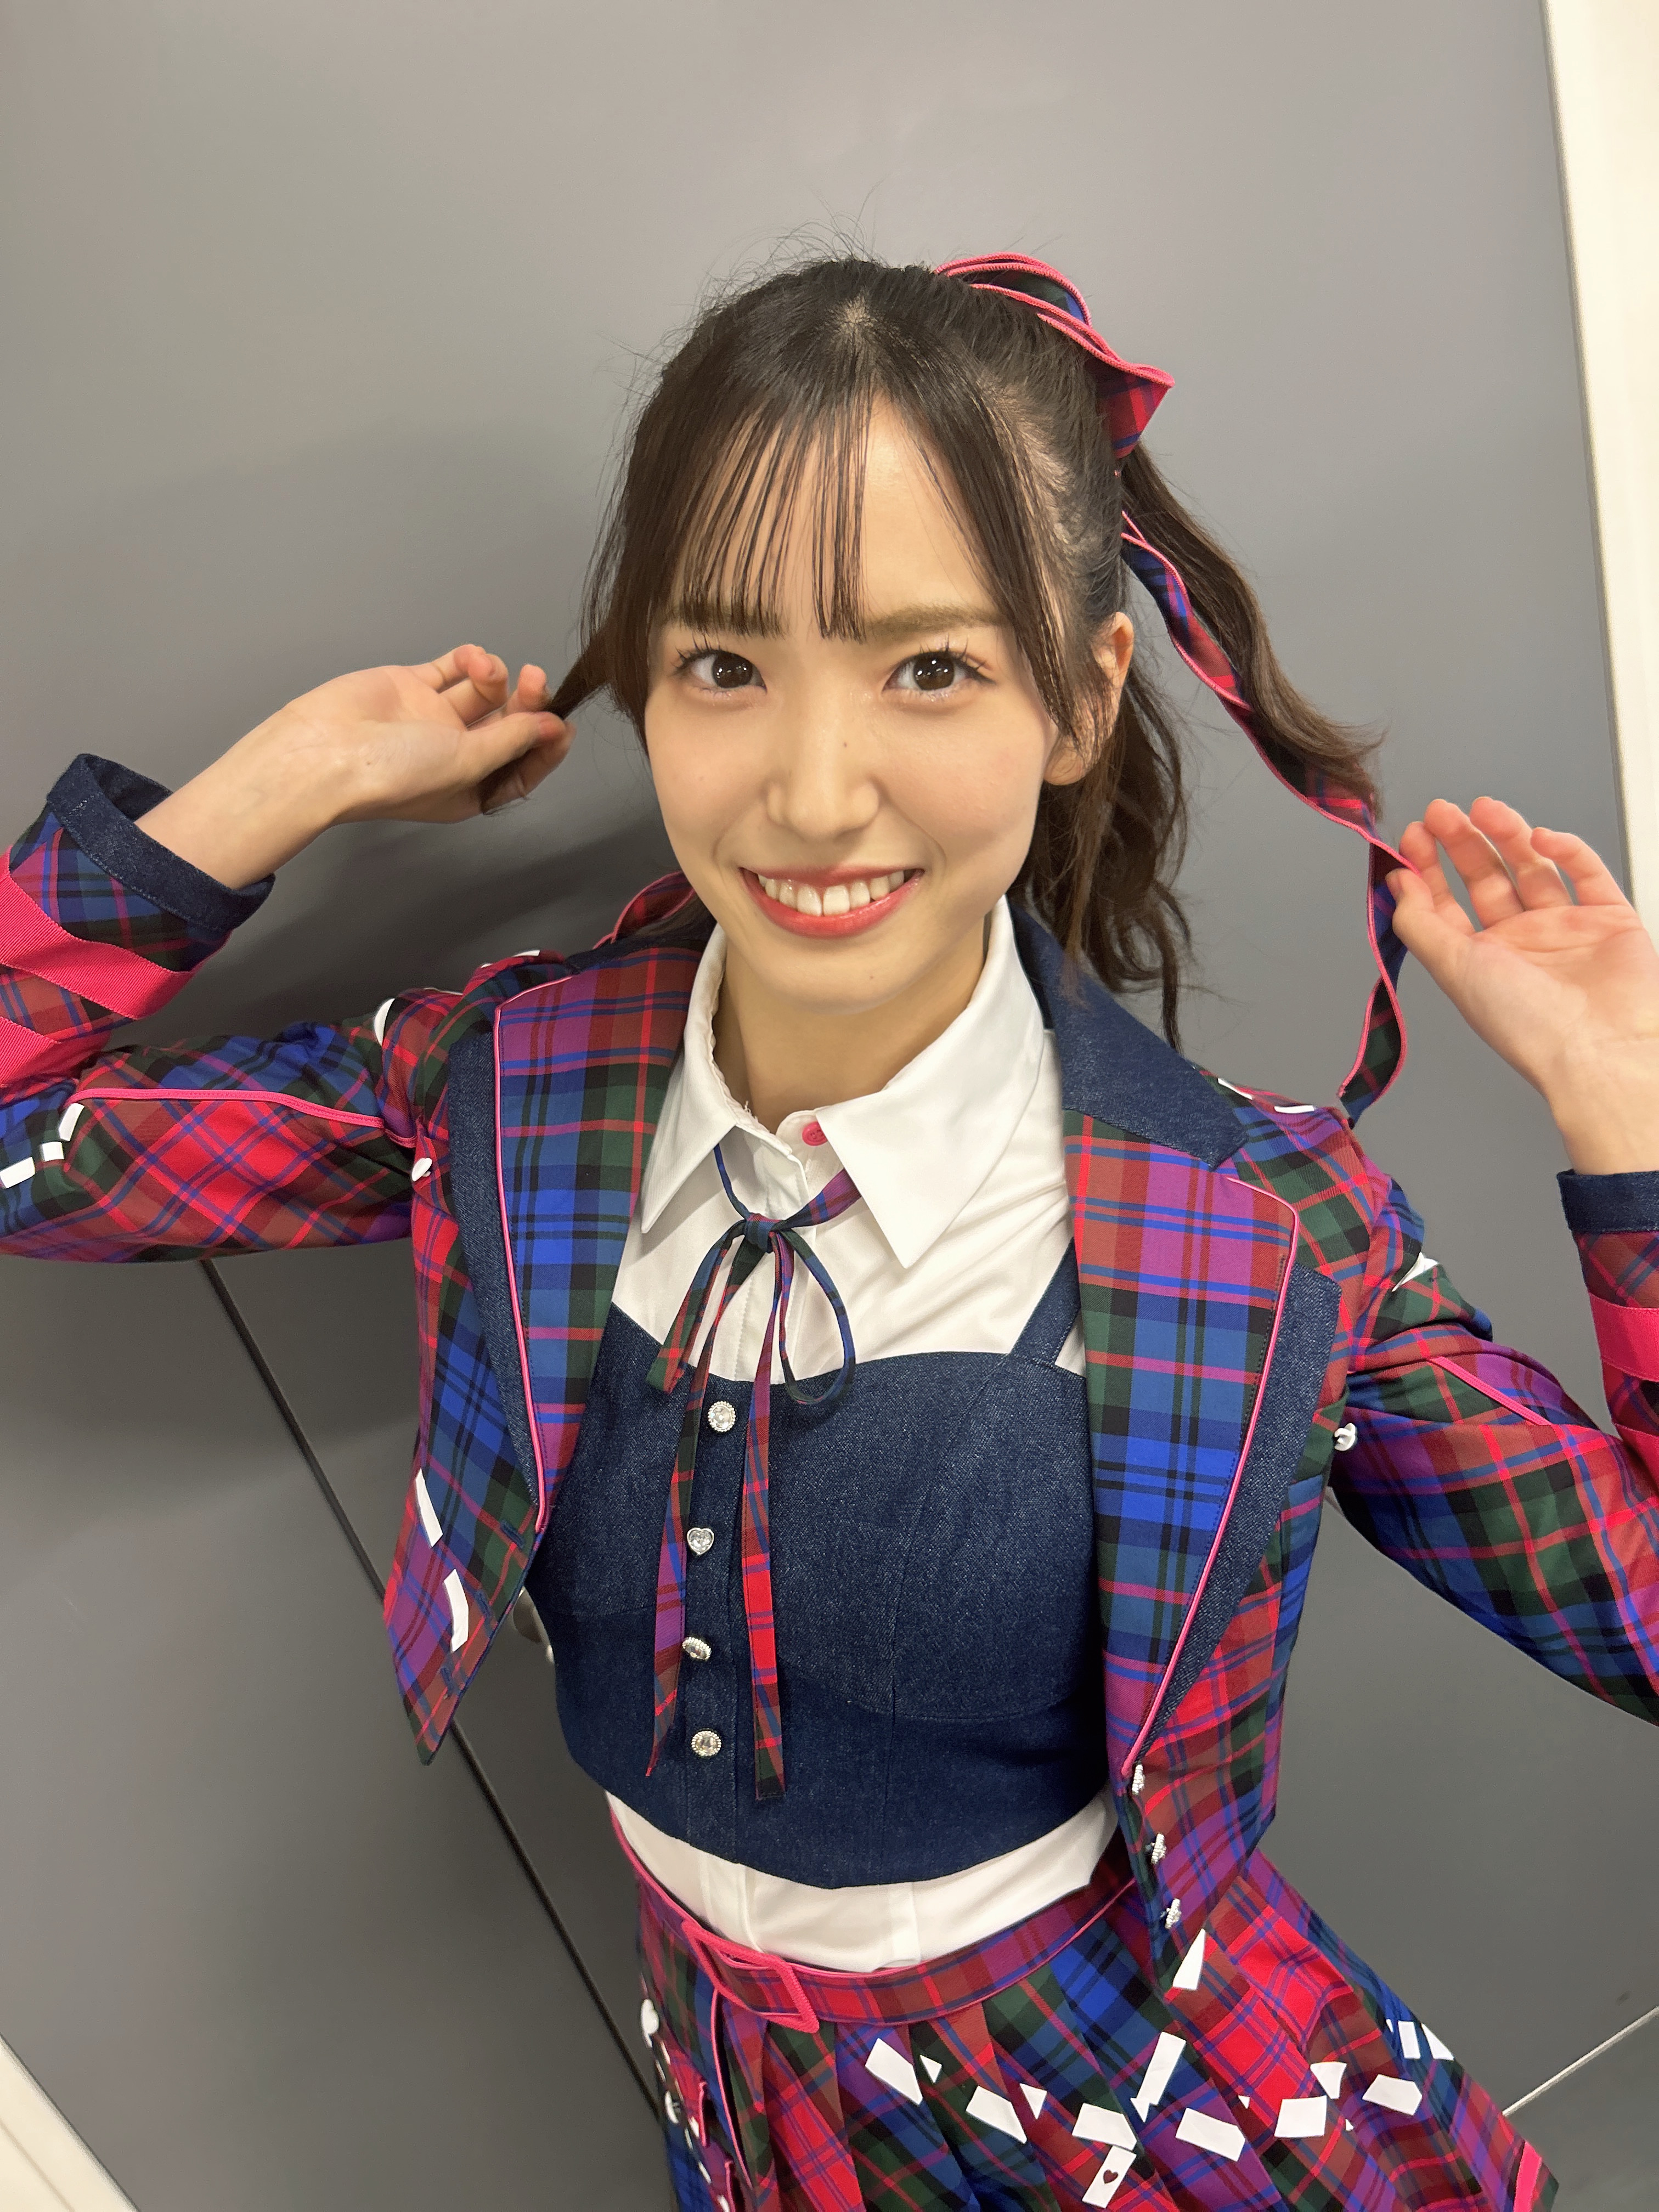 AKB48 Community Posts - どうも😊 下尾みうです♪ これから、よろしく